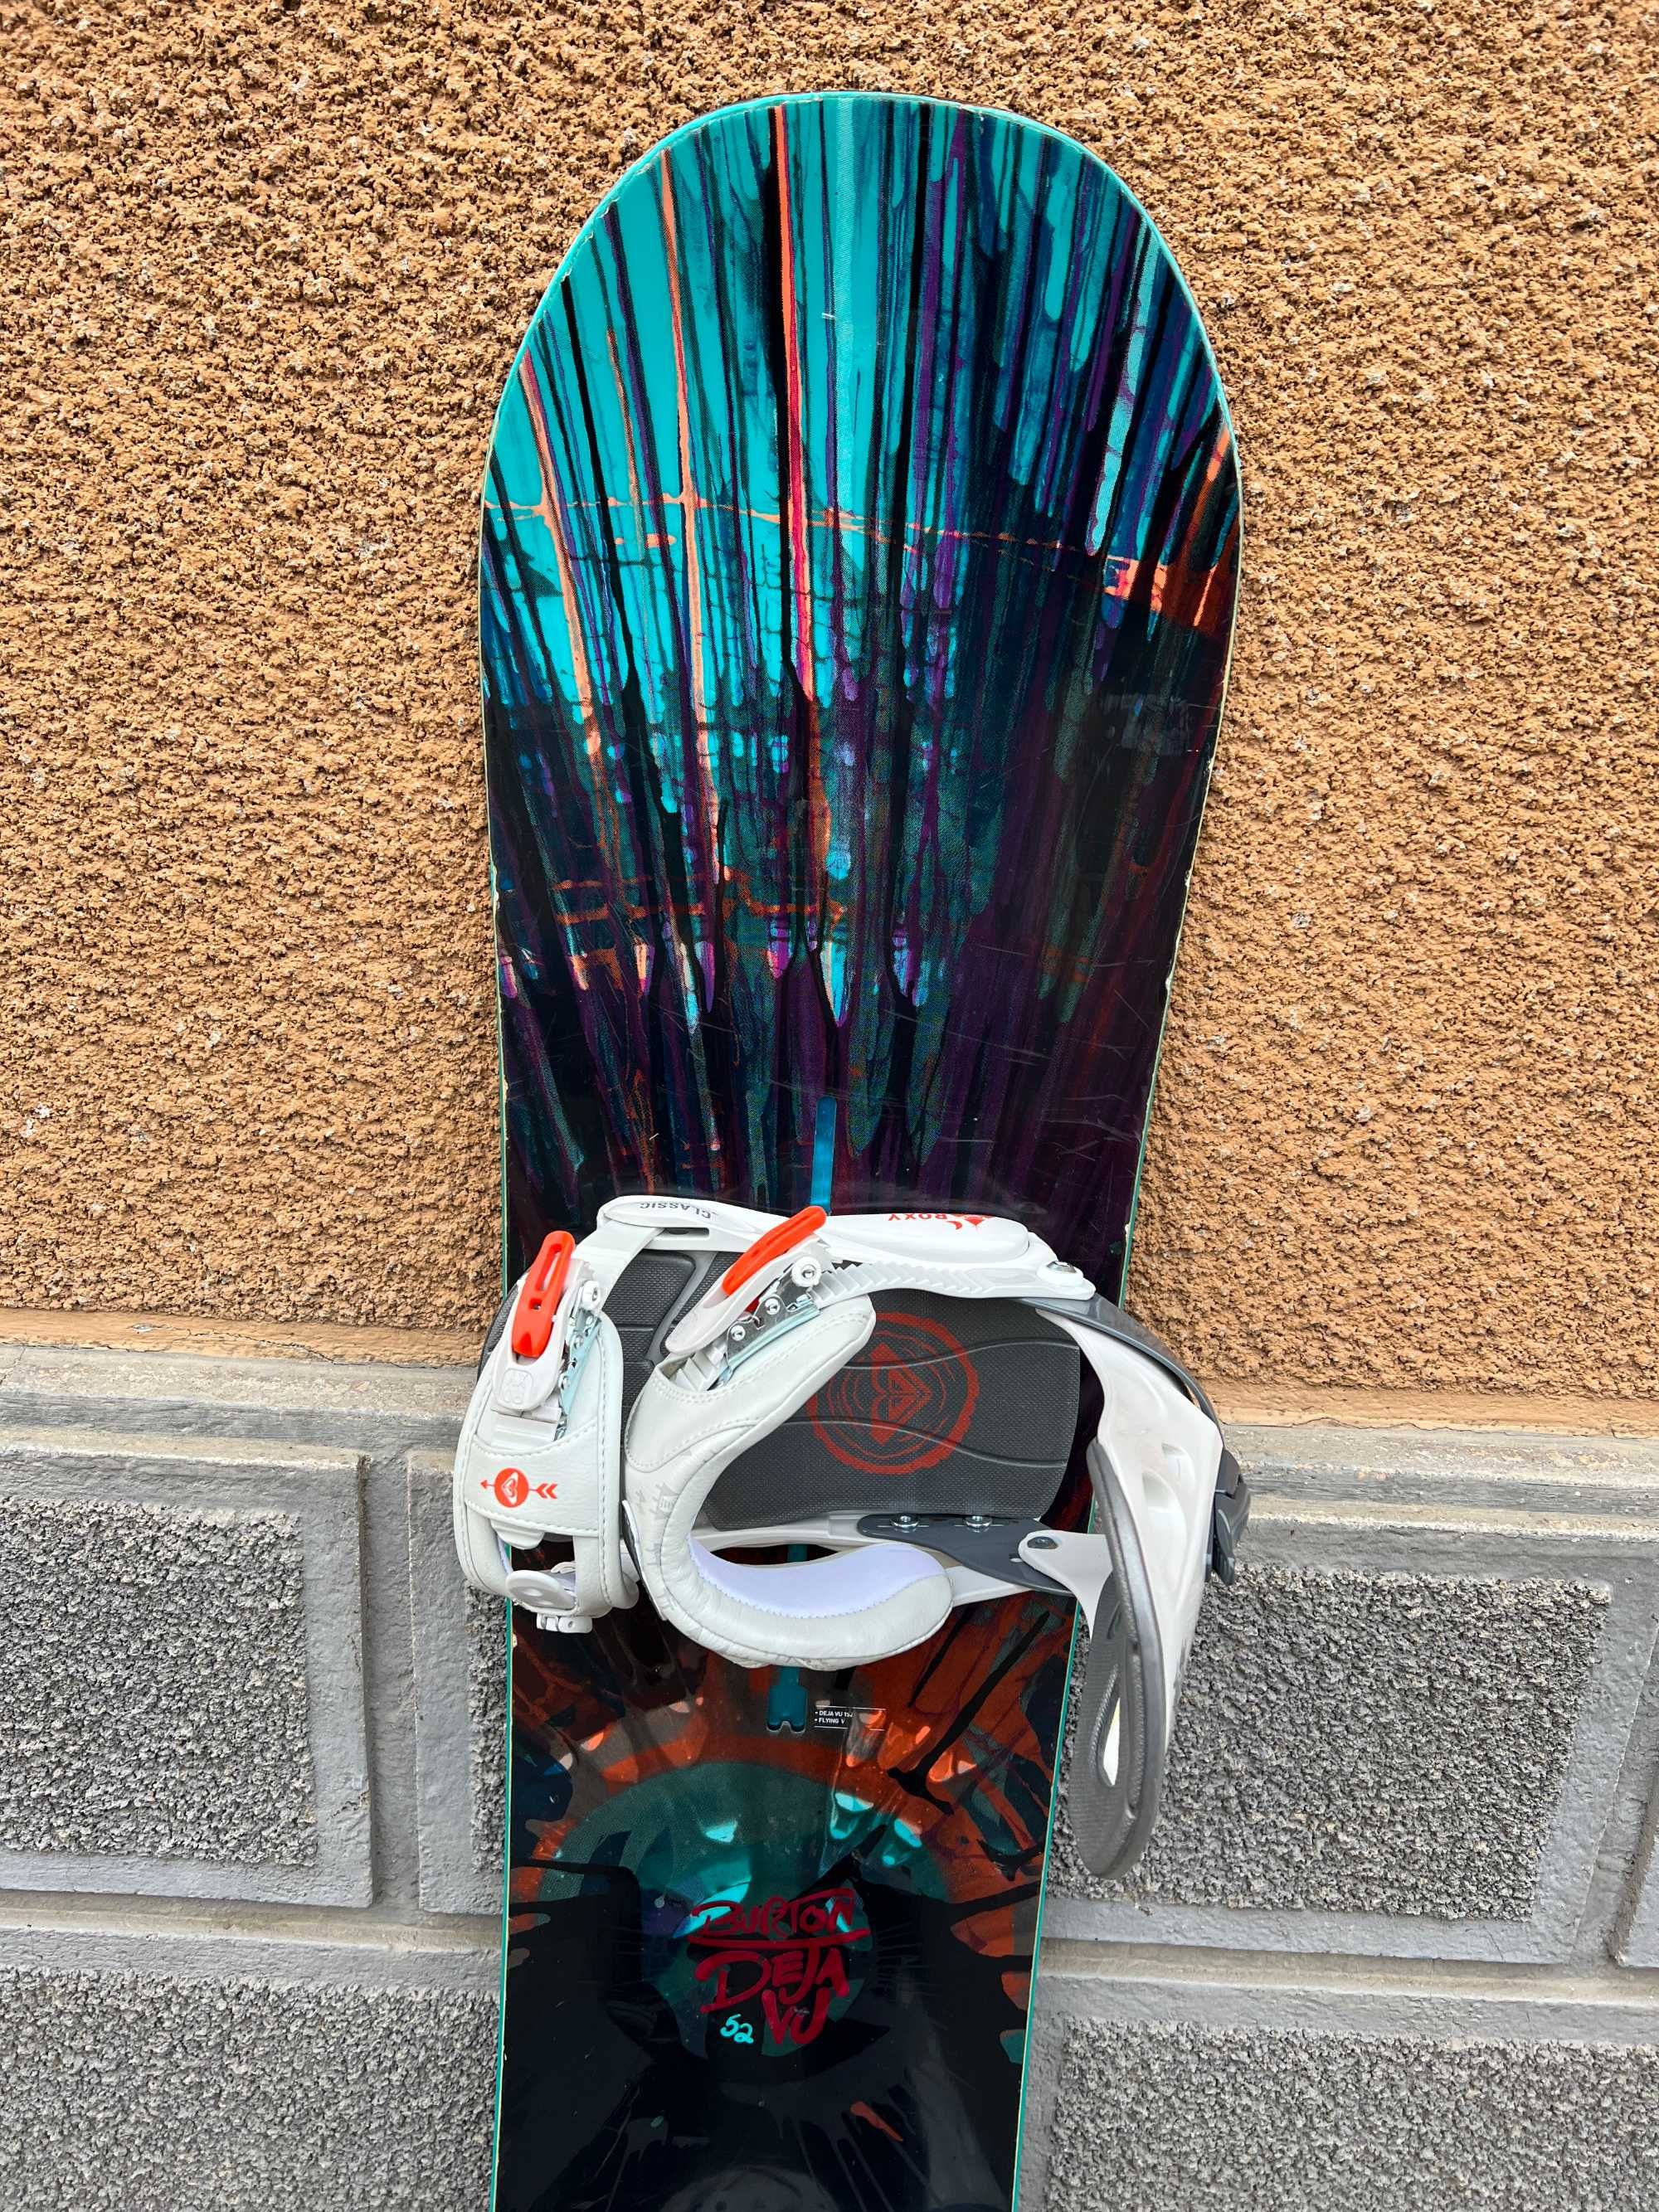 placa snowboard burton deja vu L152